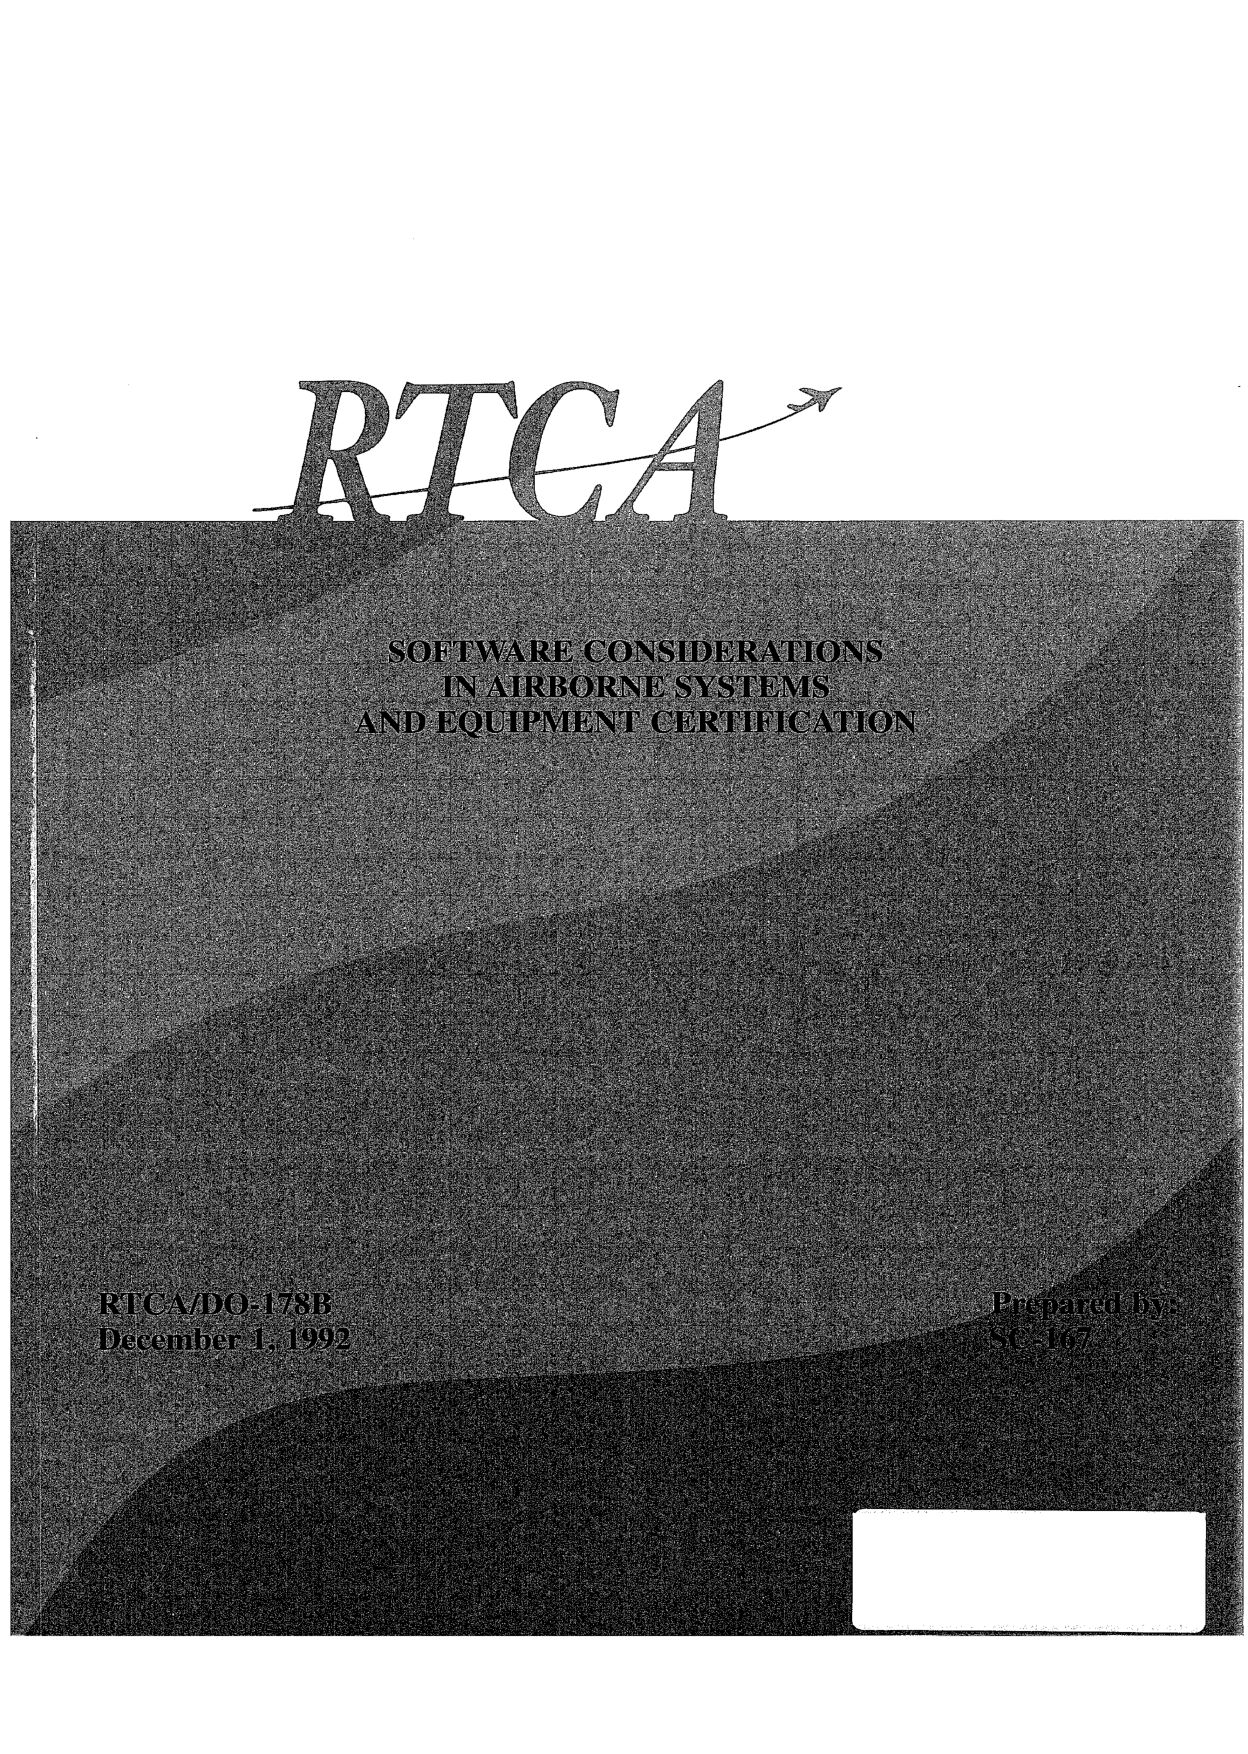 RTCA DO-178B-1992